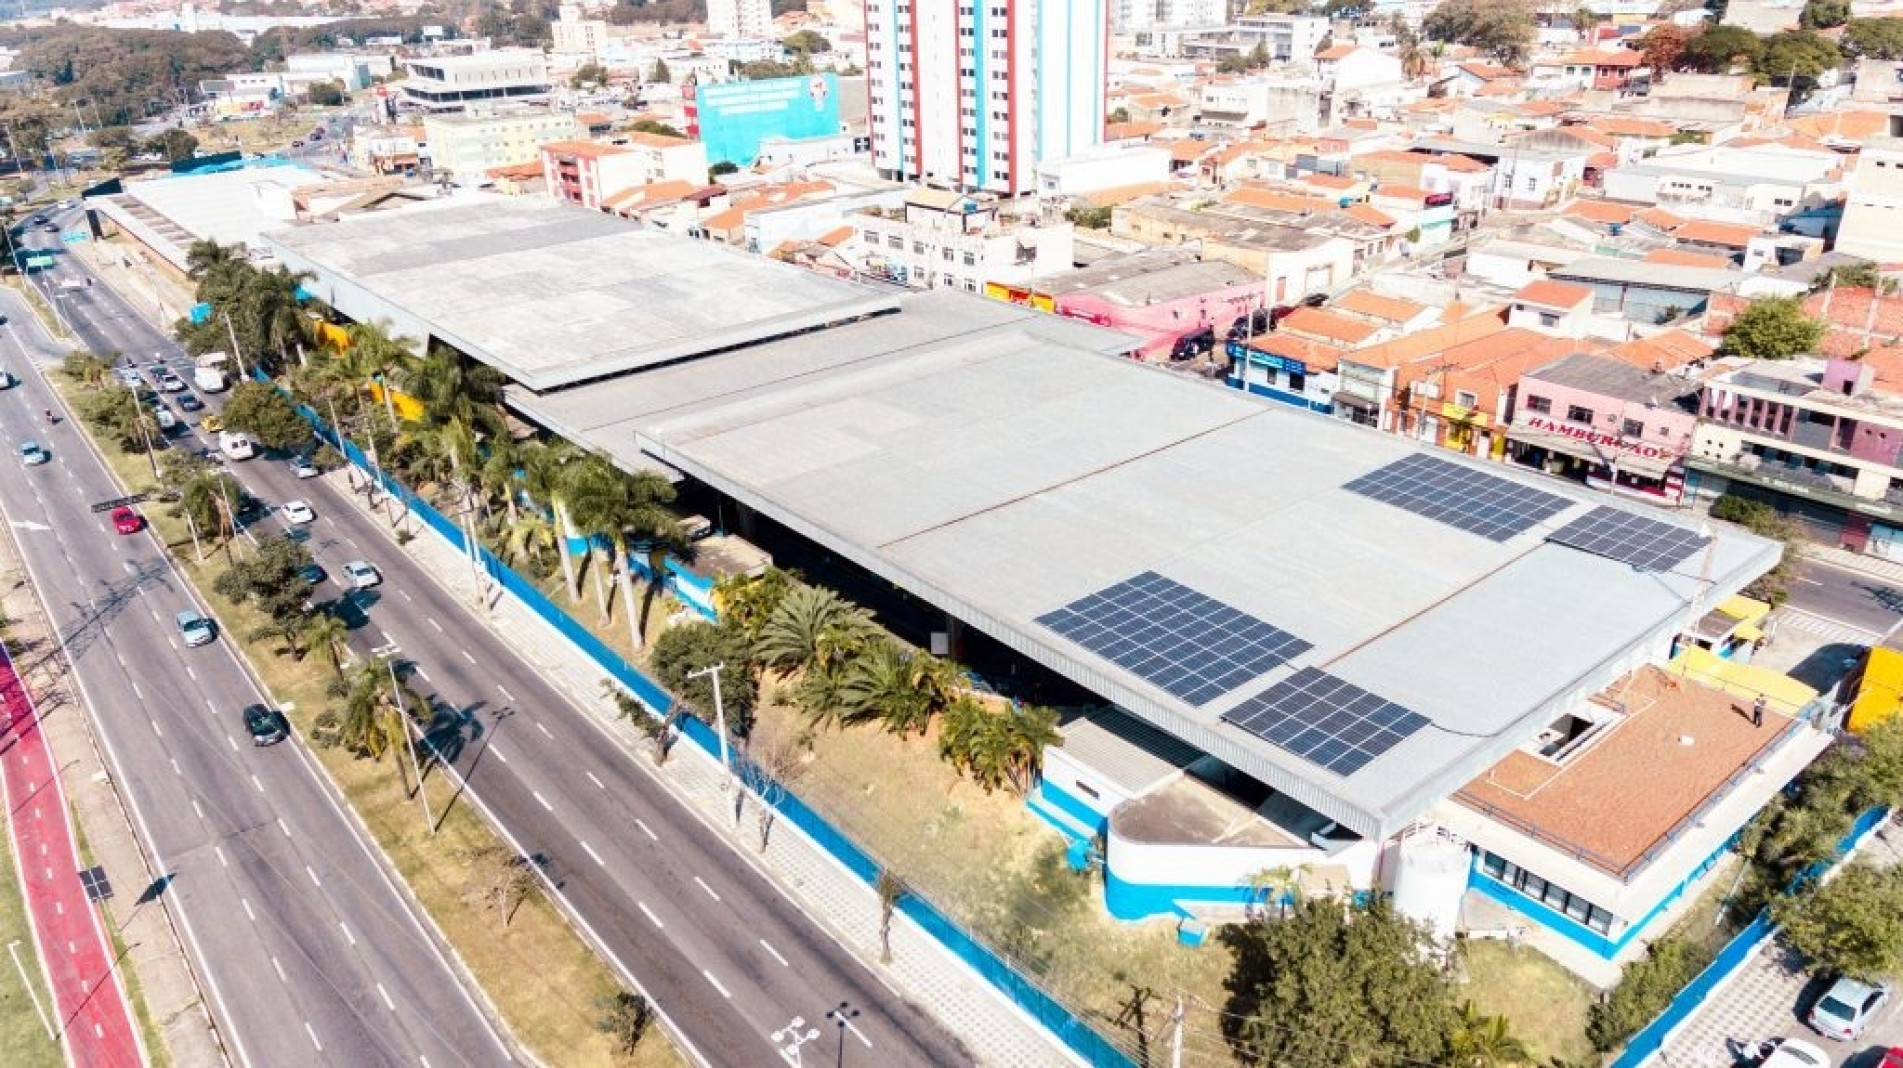 Placas fotovoltaicas podem ser observadas sobre a cobertura do Terminal São Paulo